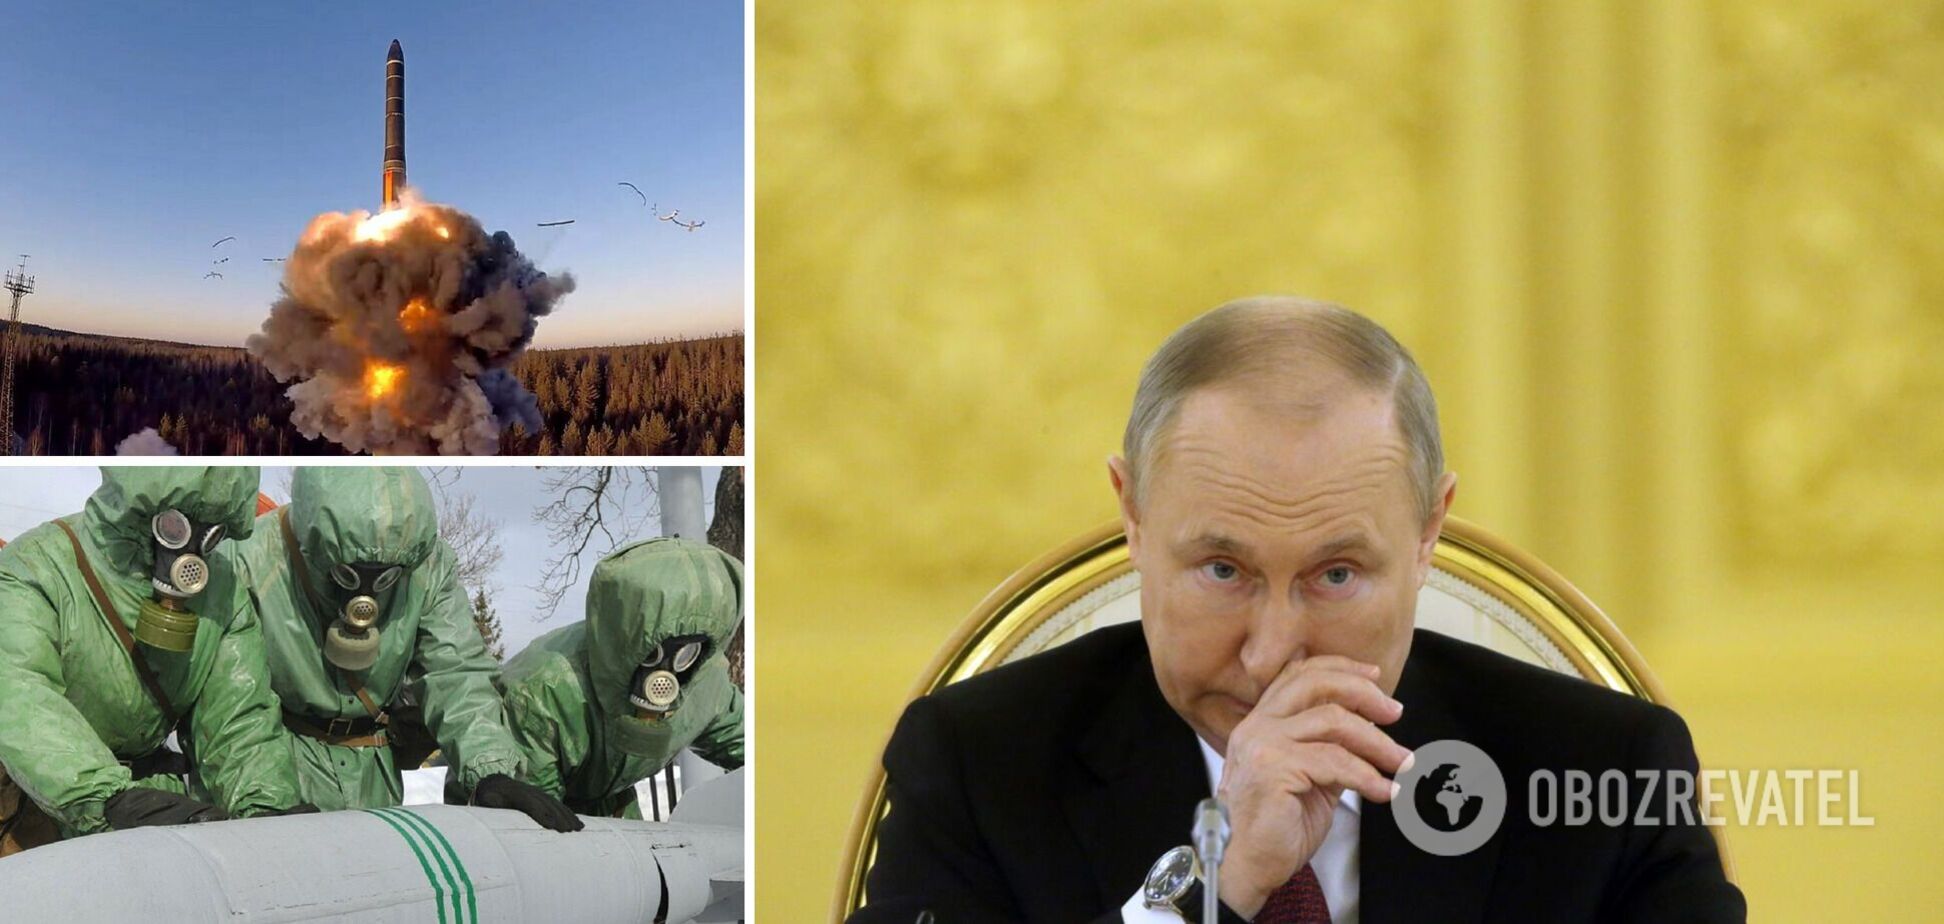 Рискнет ли Путин применить ядерное, химическое или биологическое оружие